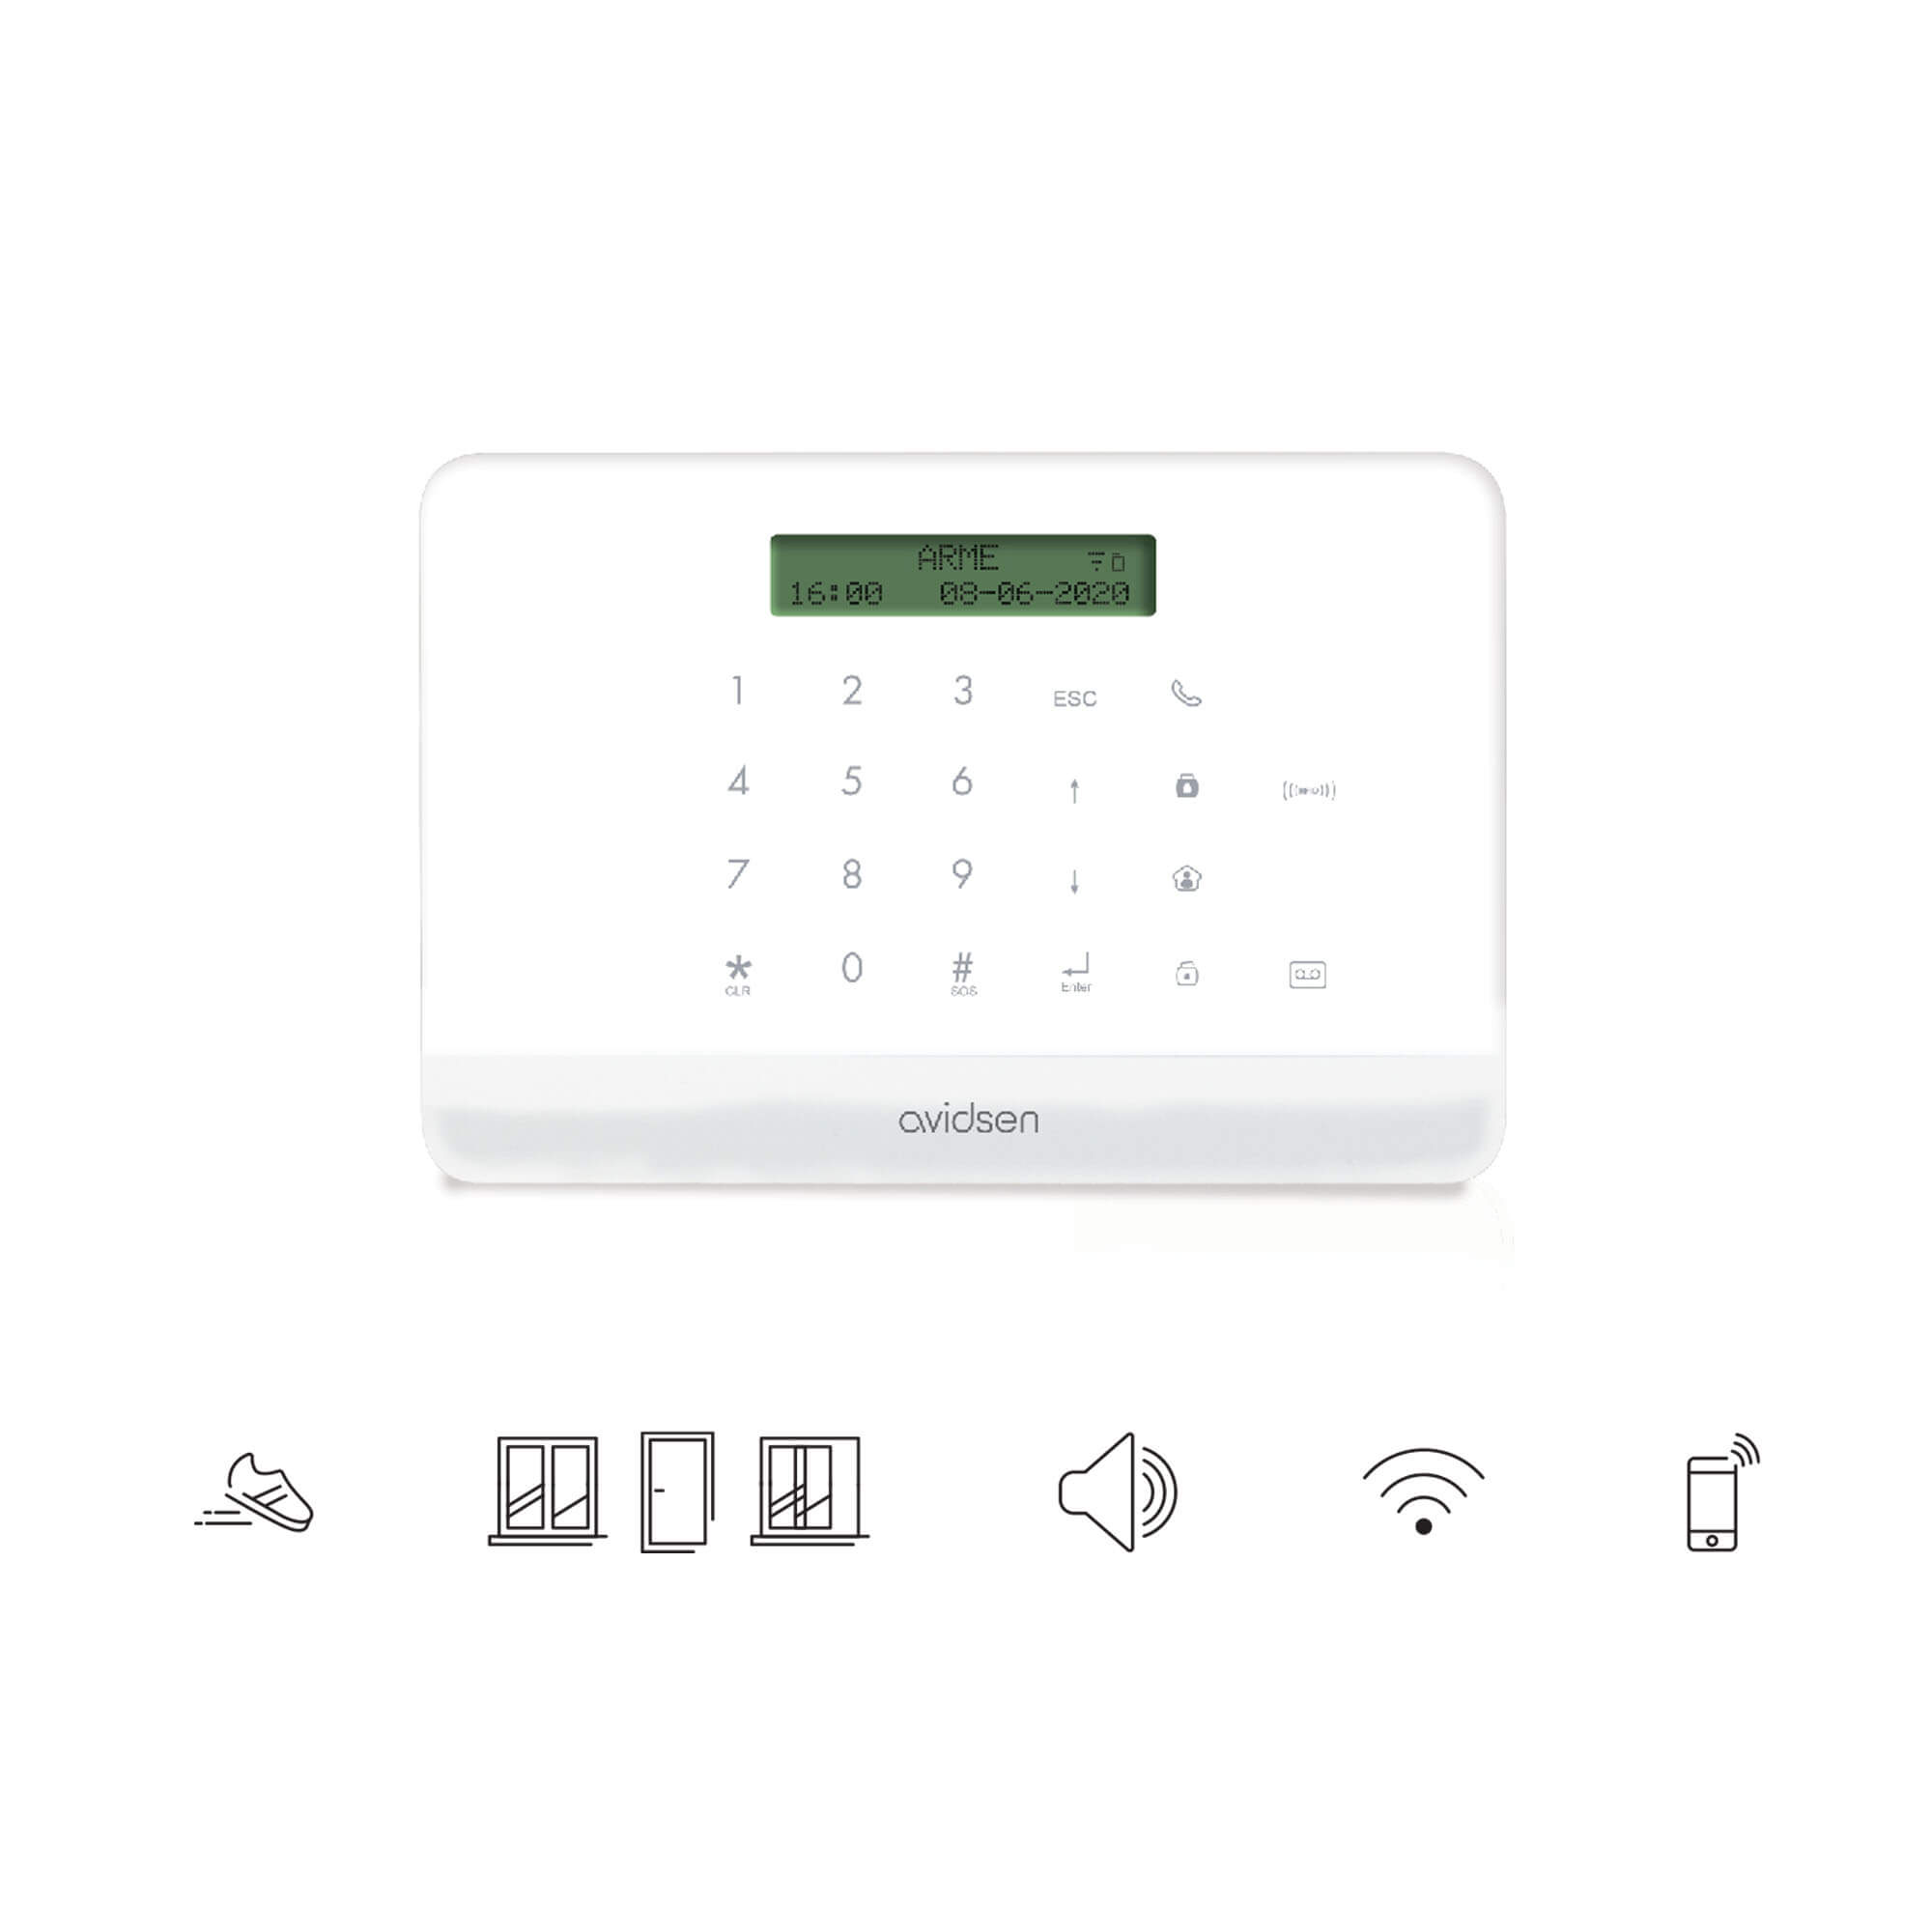 Kit Alarme EXPERT – Système d'alarme sans fil pour garages,box